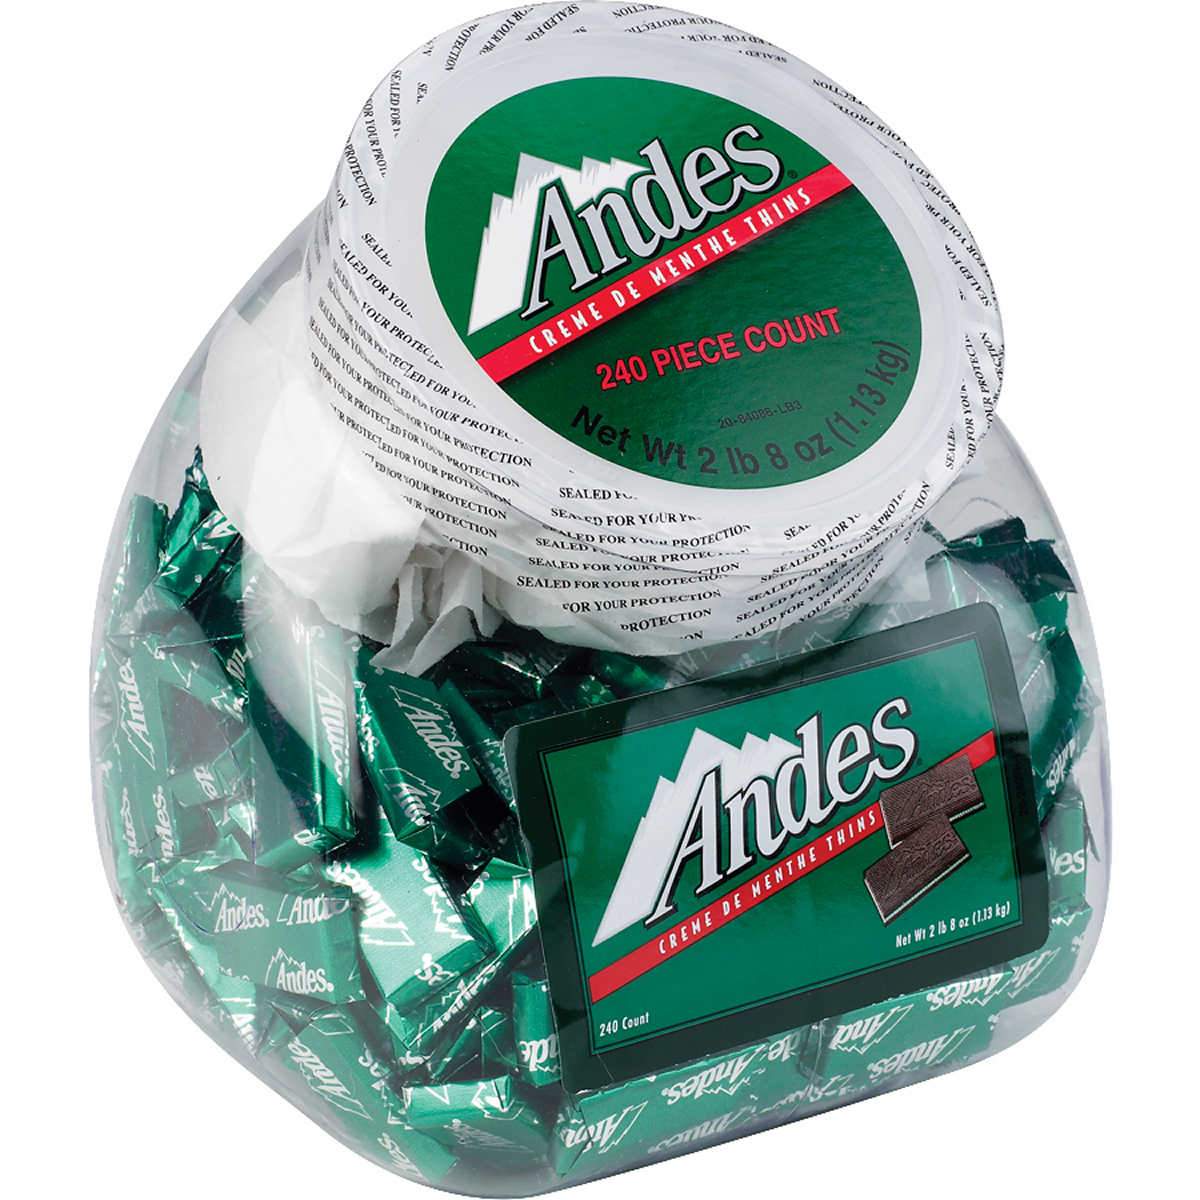 Andes Crème de Menthe Thin Mints Andes 240 Count 